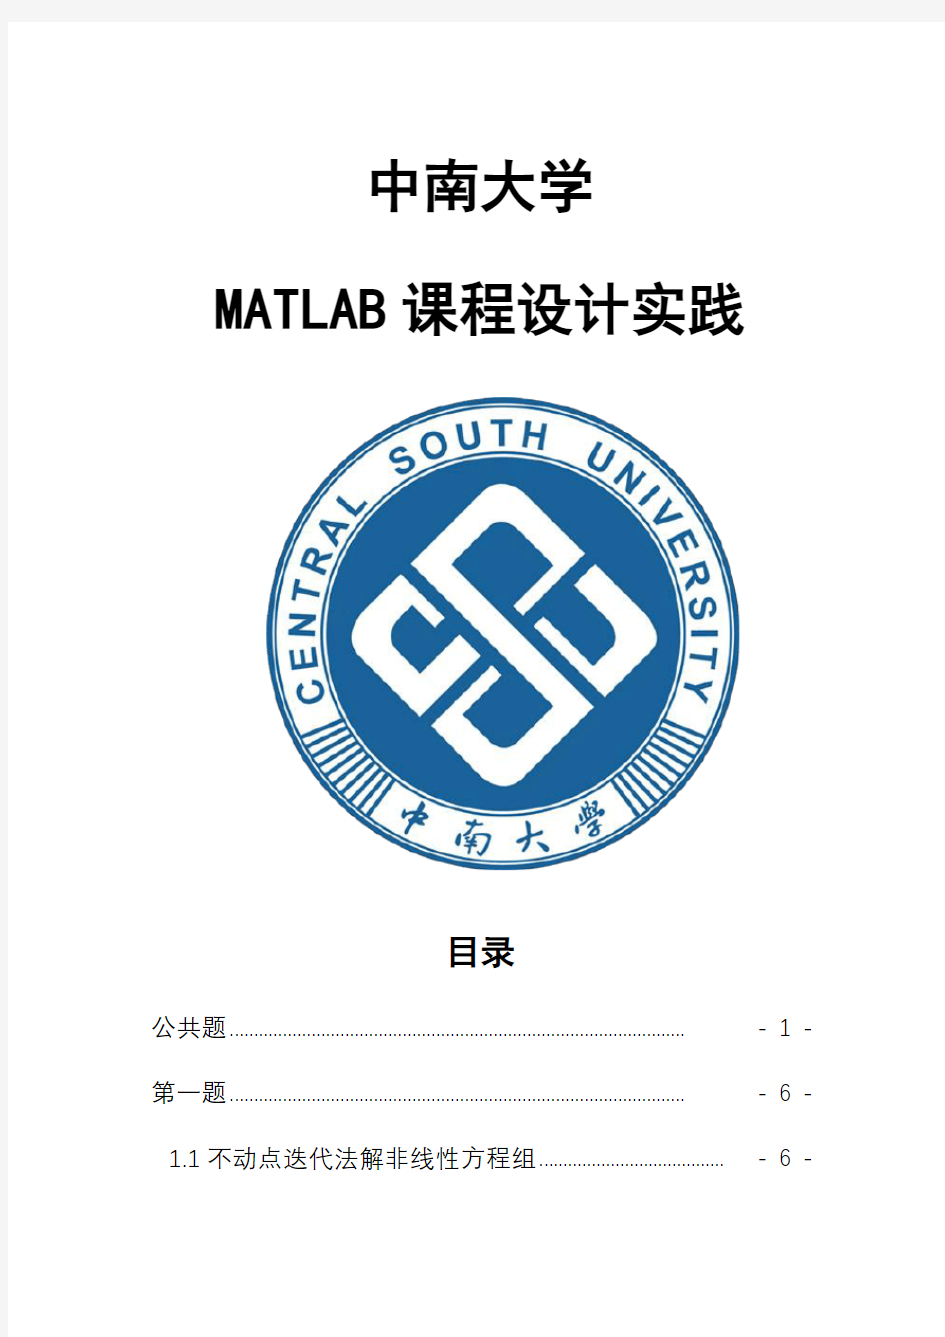 中南大学MATLAB课程实践